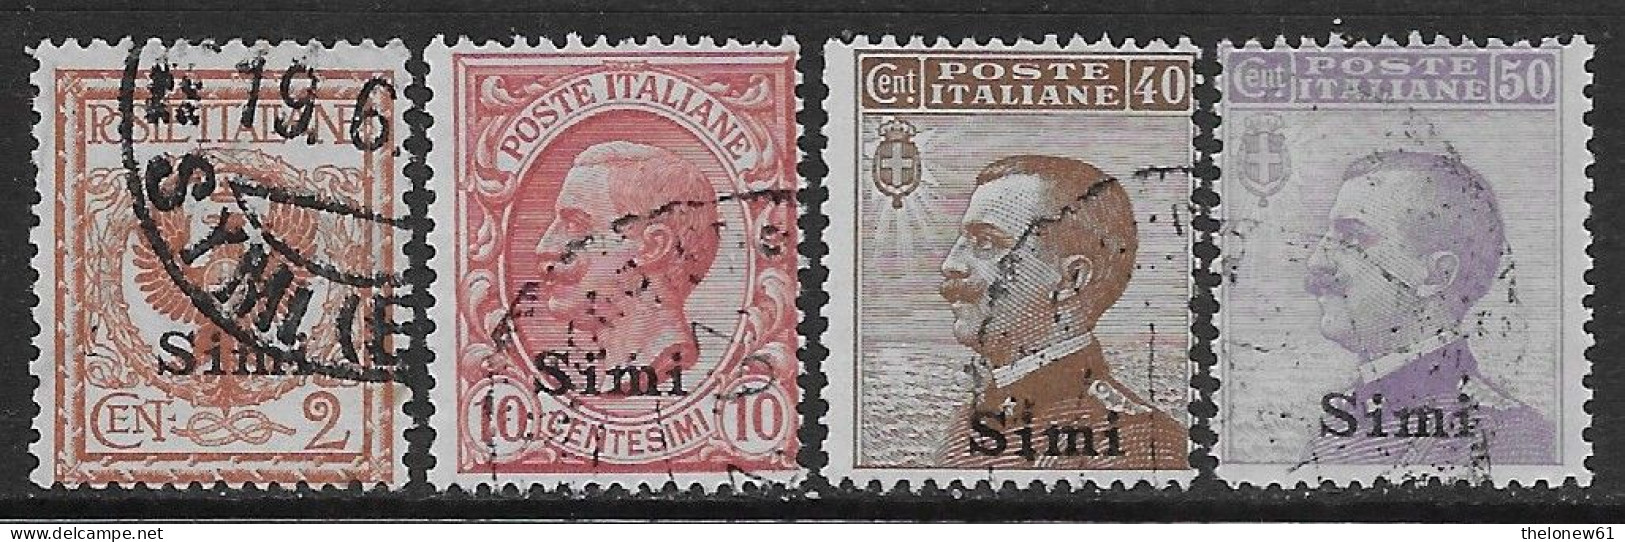 Italia Italy 1912 Colonie Egeo Simi Effigie 4val Sa N.1,3,6-7 US - Ägäis (Simi)